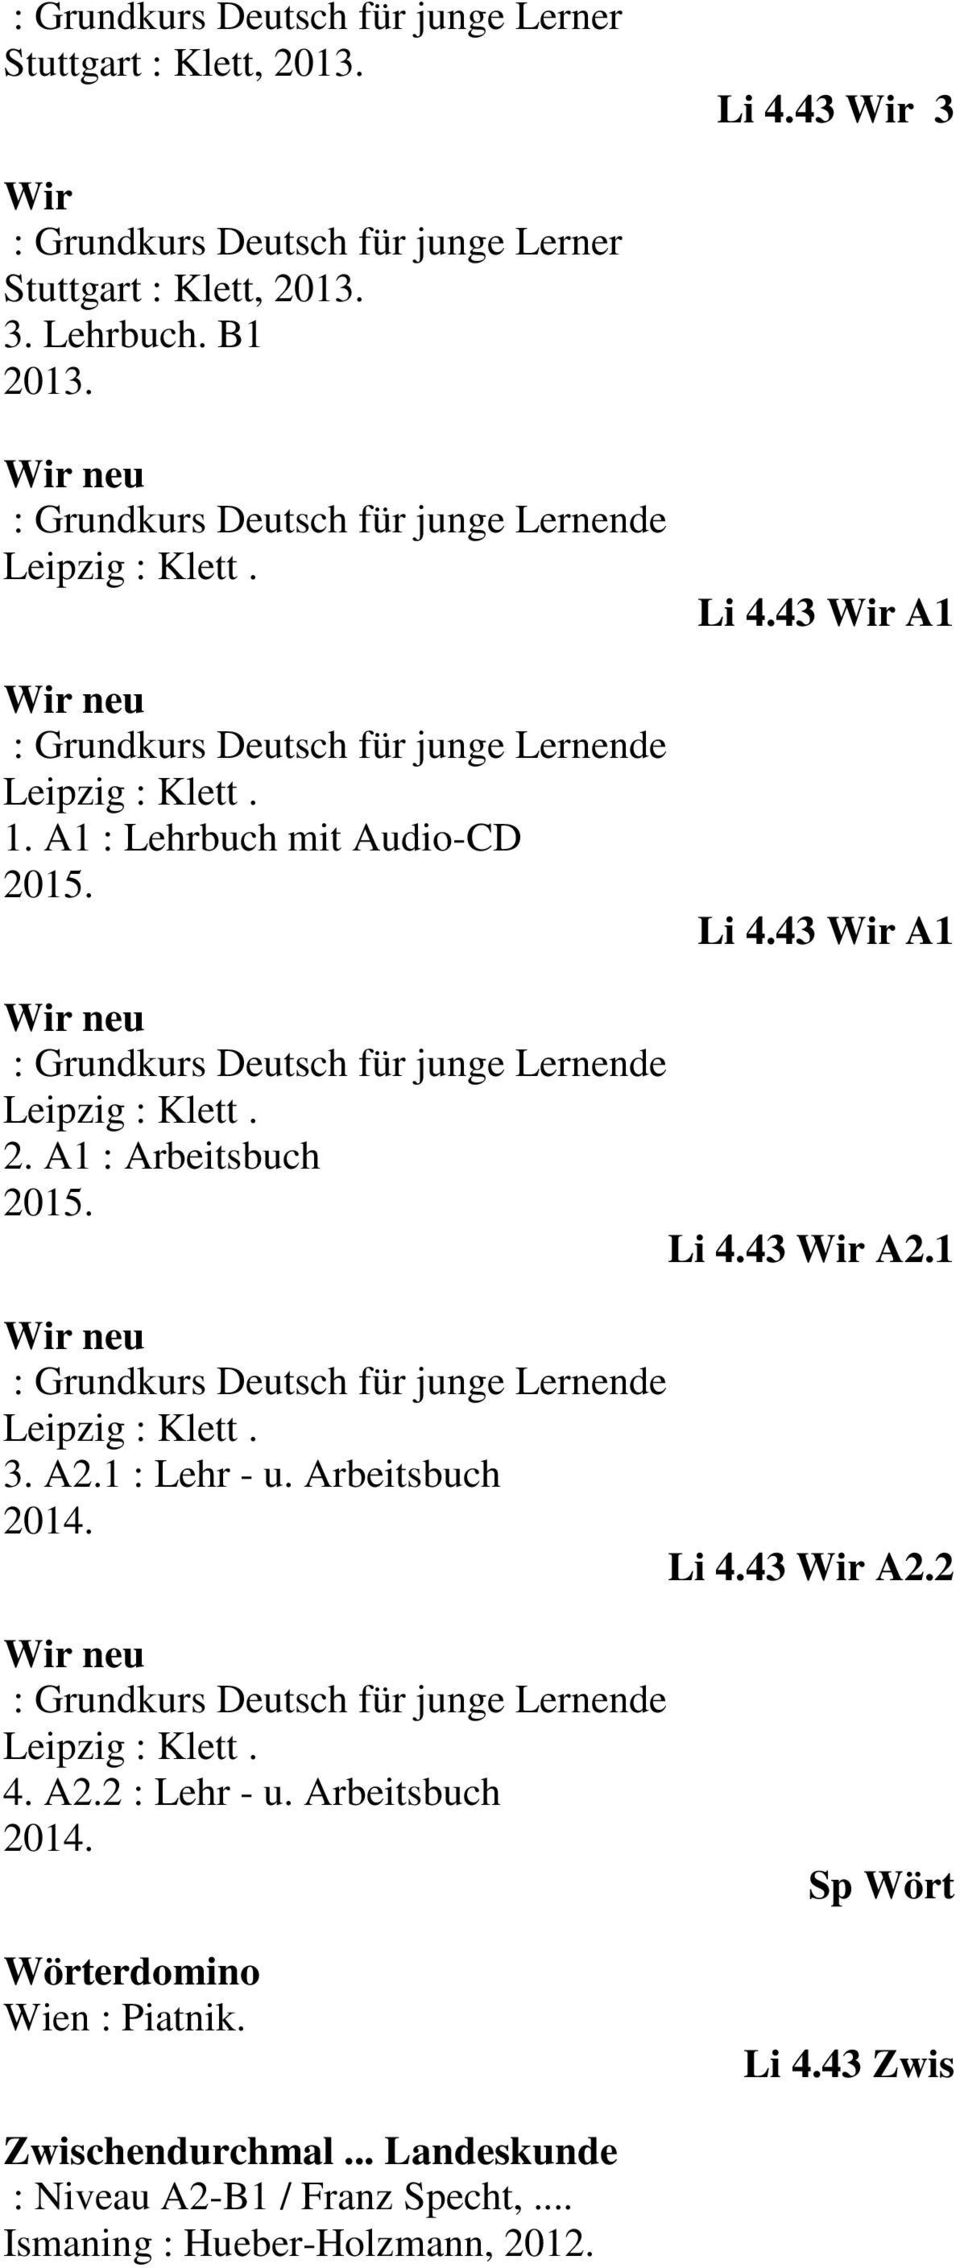 43 Wir A1 Wir neu : Grundkurs Deutsch für junge Lernende Leipzig : Klett. 2. A1 : Arbeitsbuch Li 4.43 Wir A2.1 Wir neu : Grundkurs Deutsch für junge Lernende Leipzig : Klett. 3. A2.1 : Lehr - u.